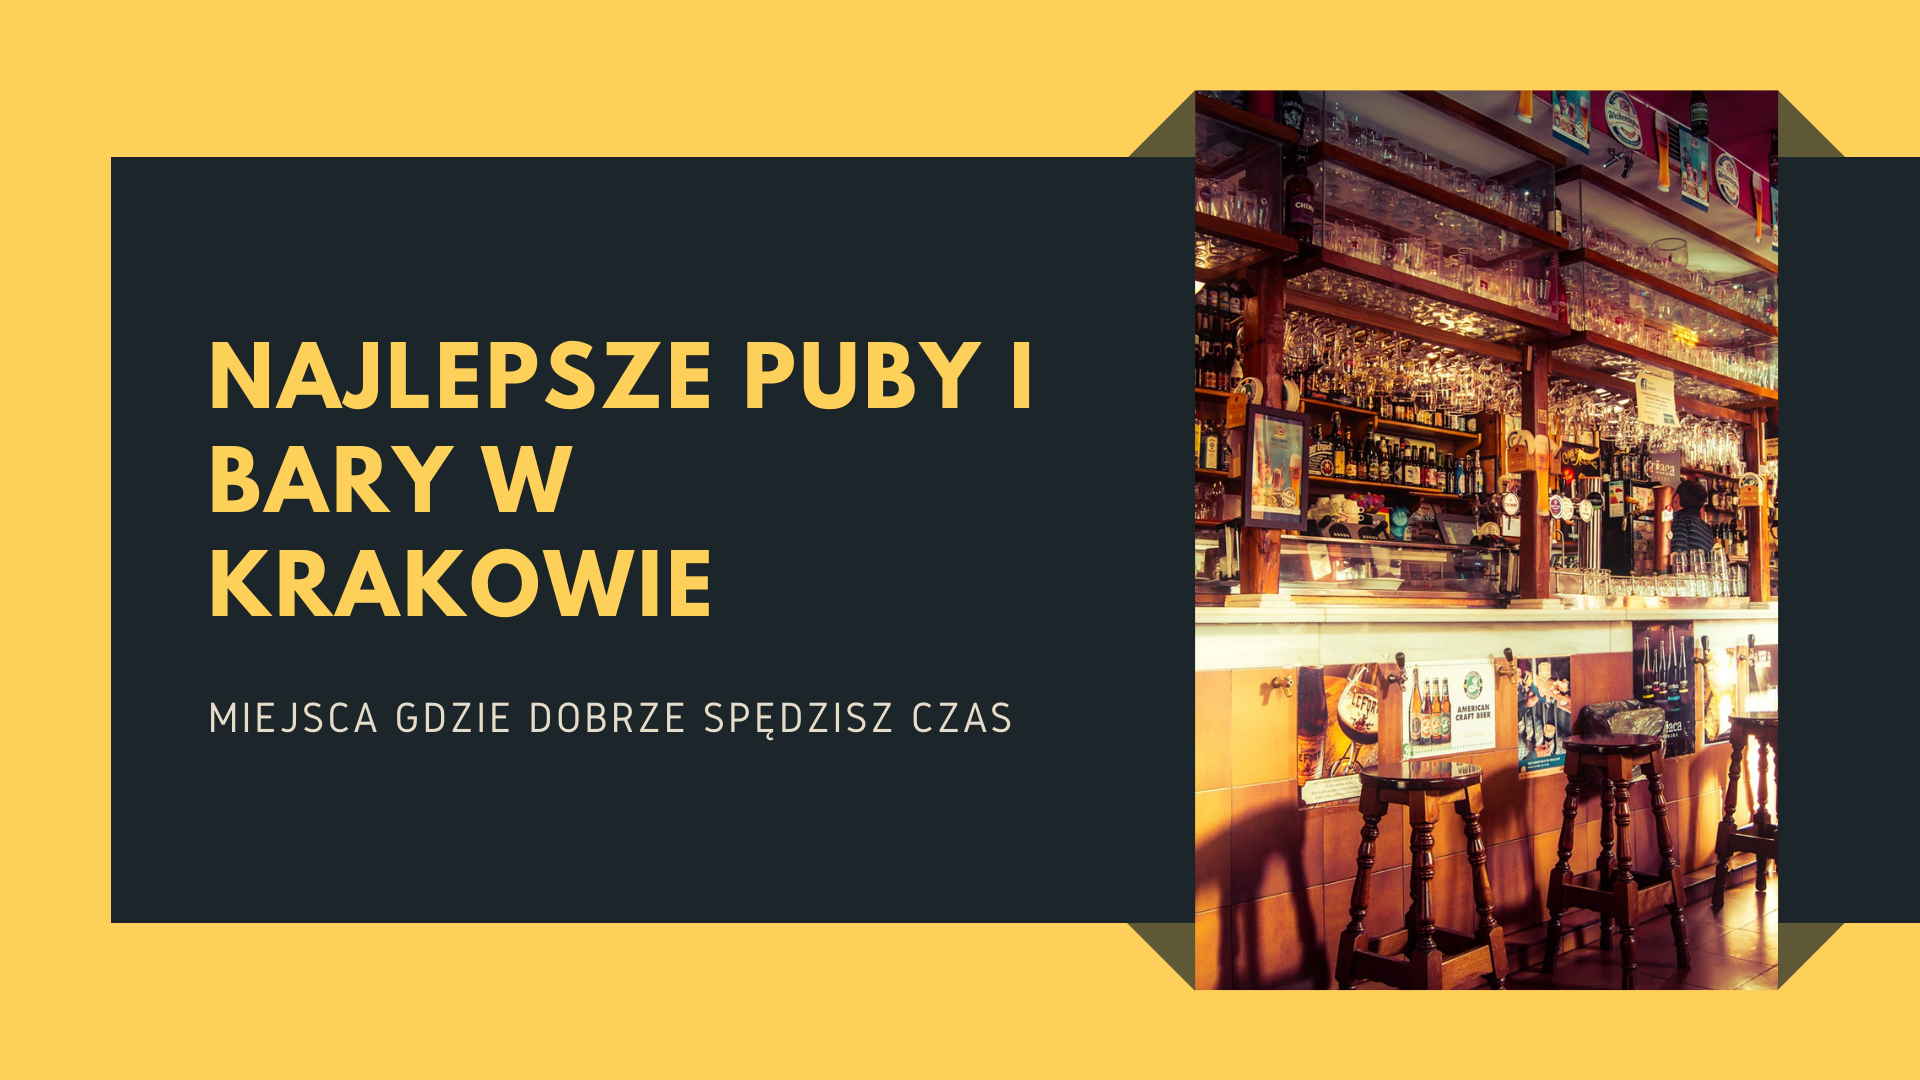 Najlepsze puby i bary w krakowie - cover photo